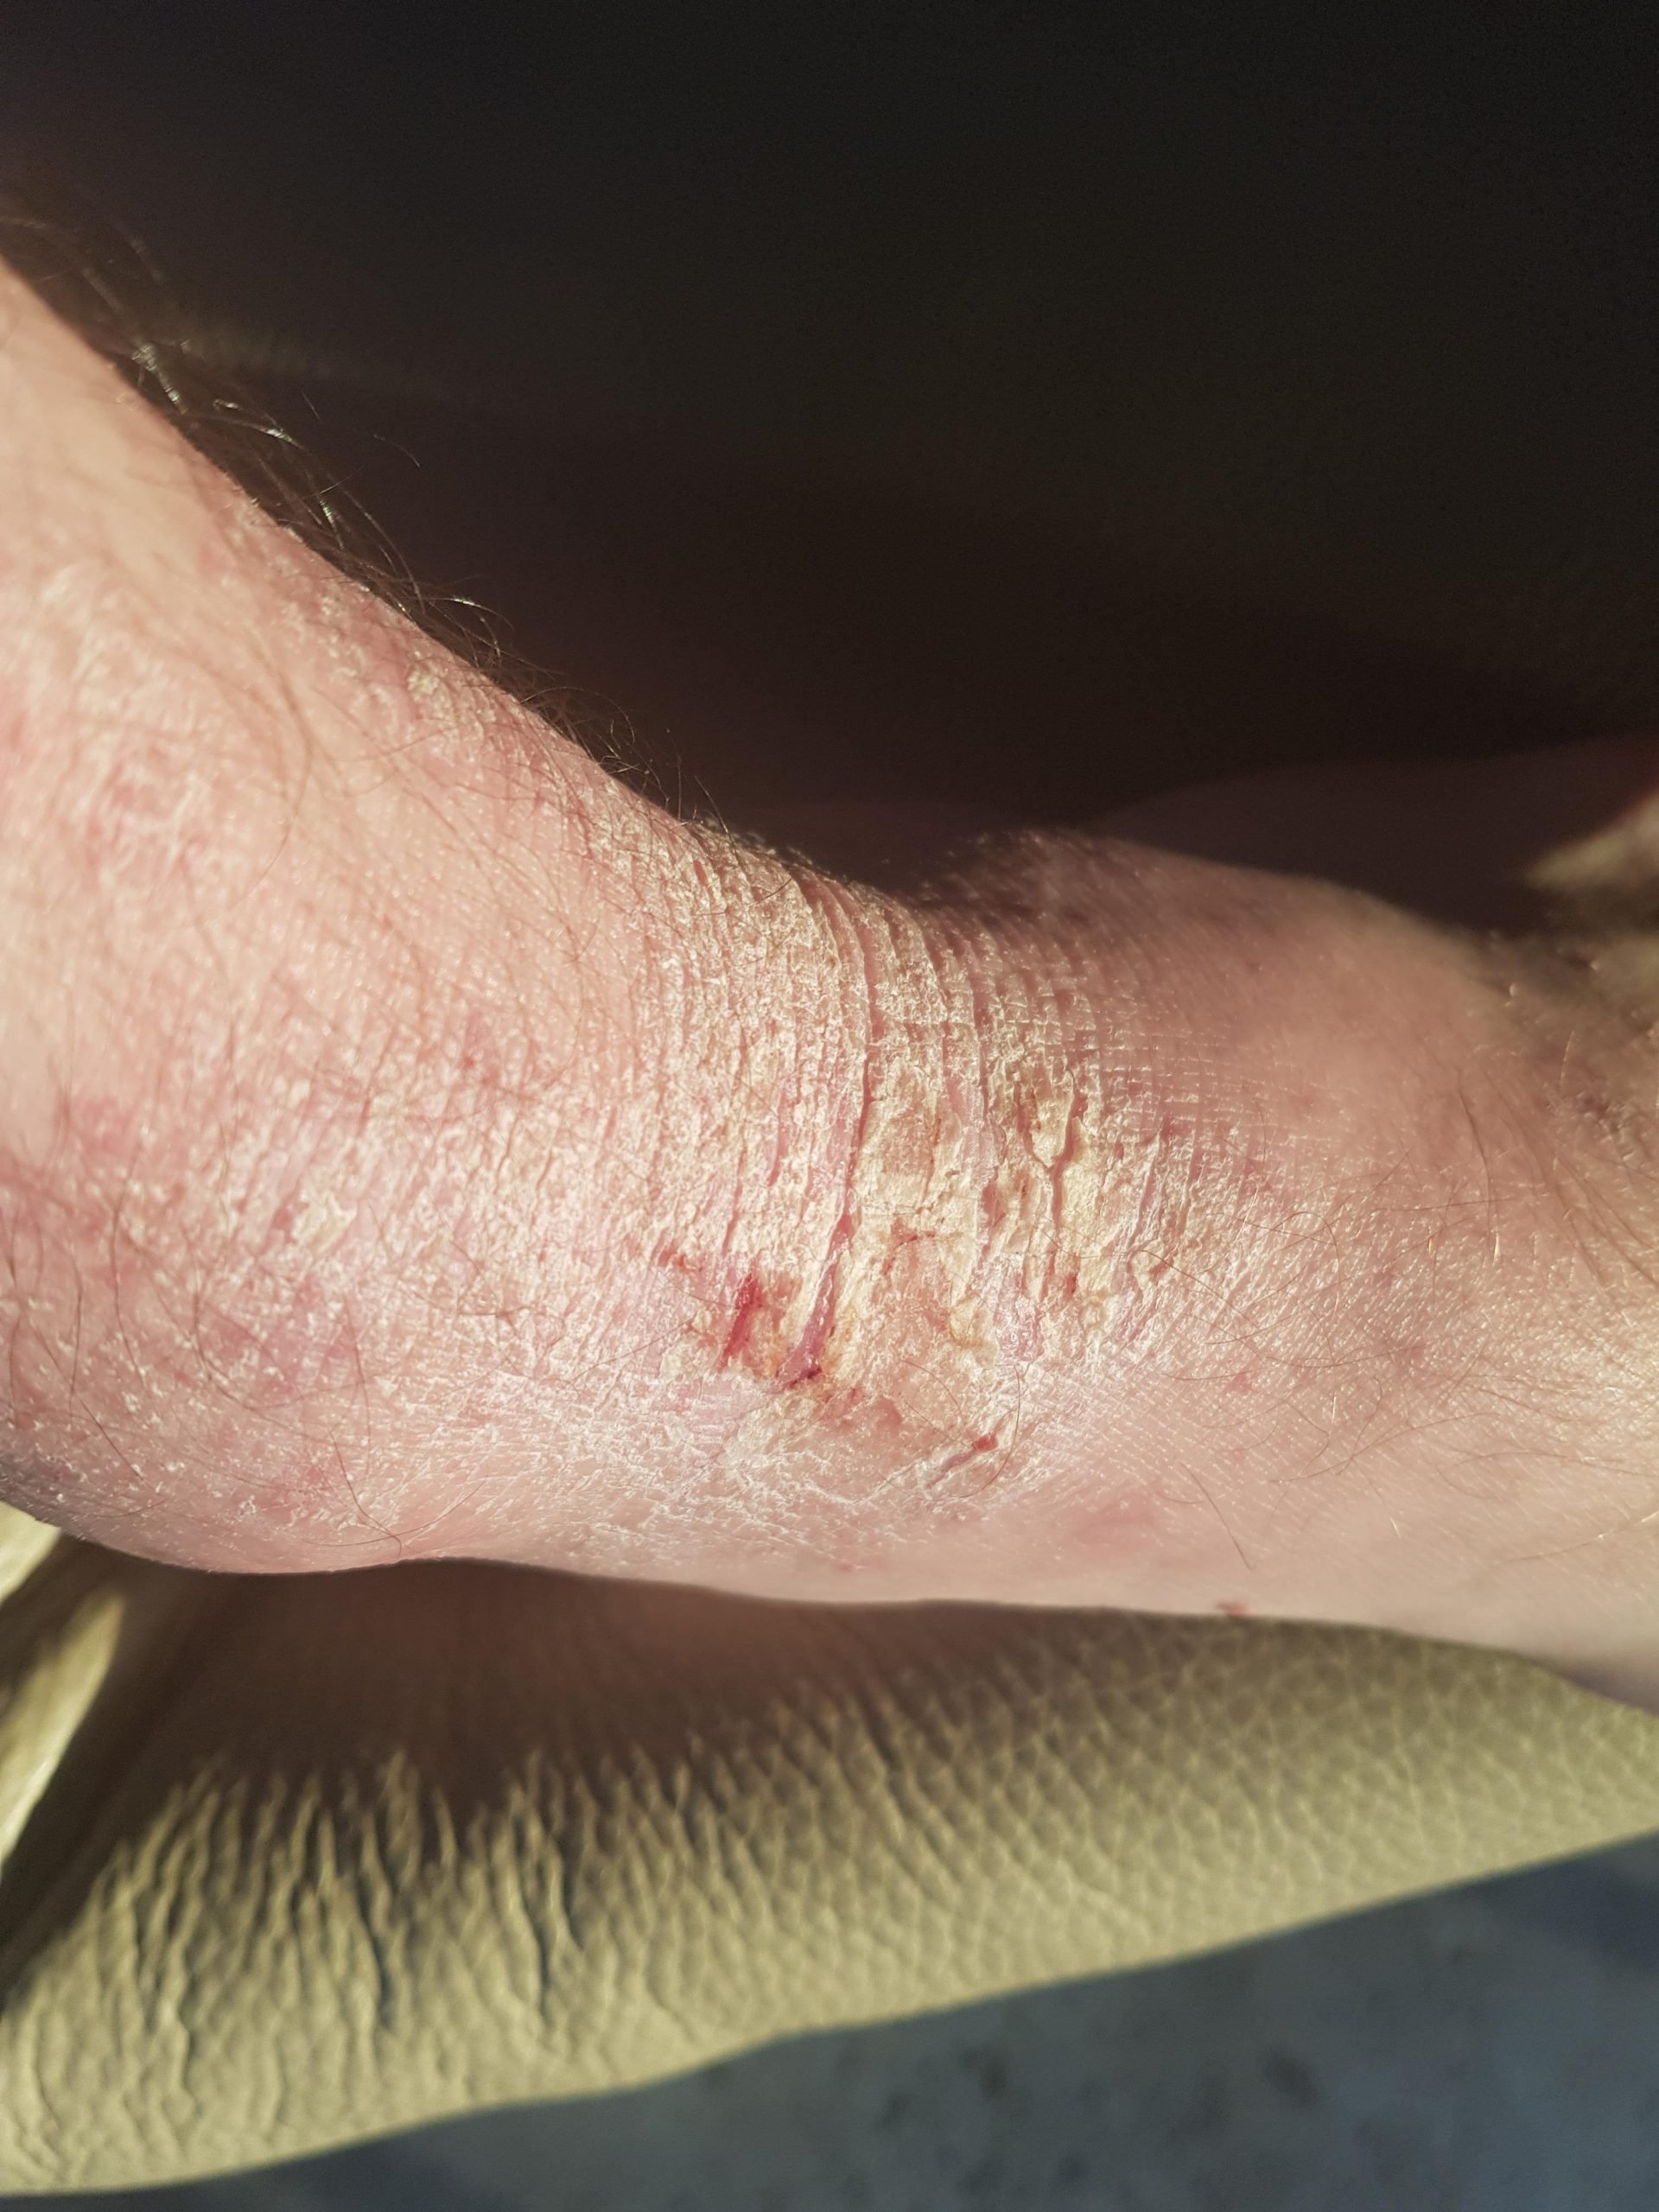 Eczema on feet from excessive heat/sweat : eczema